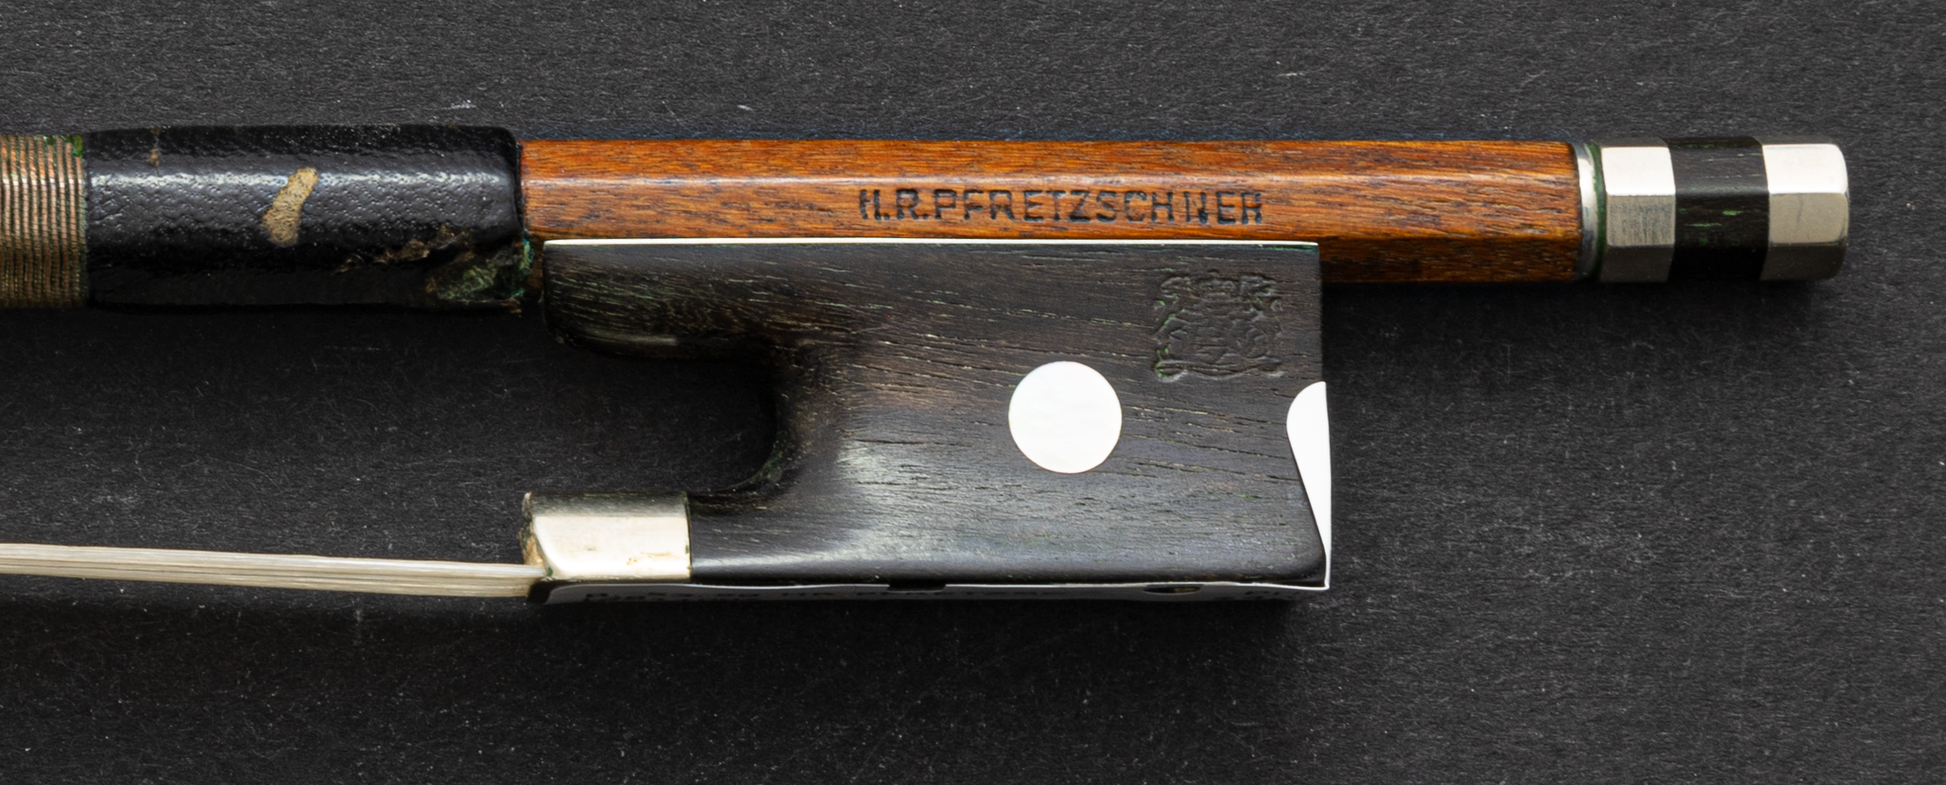 H.R. Pfretzschner Crested Violin Bow Kolstein Music